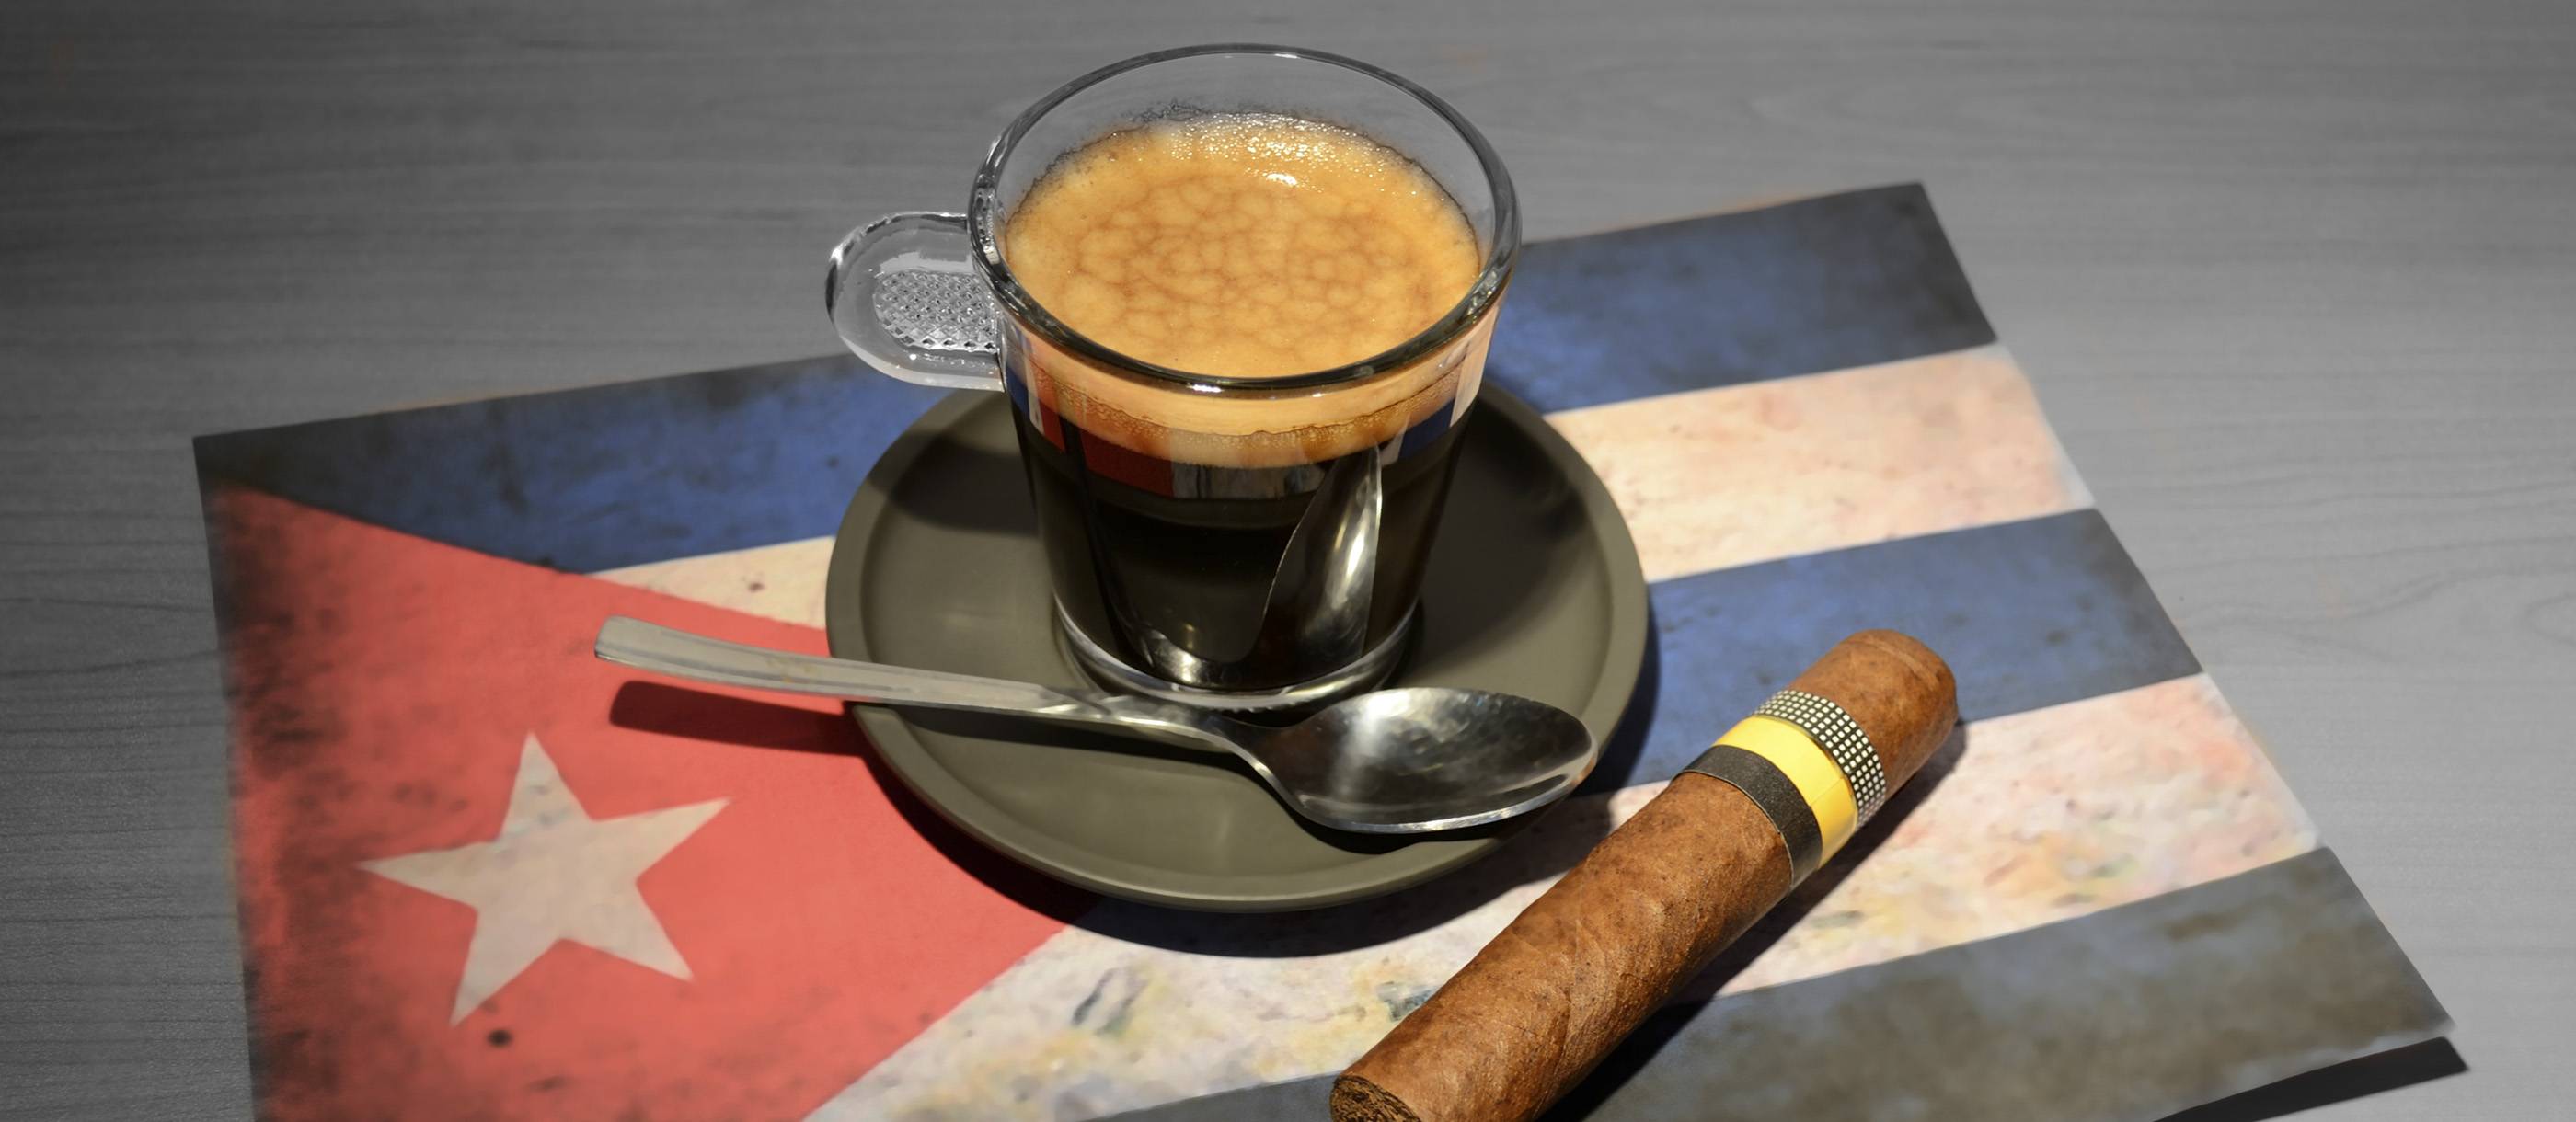 Кубинский кофе – сорта, производство, рецепт приготовления